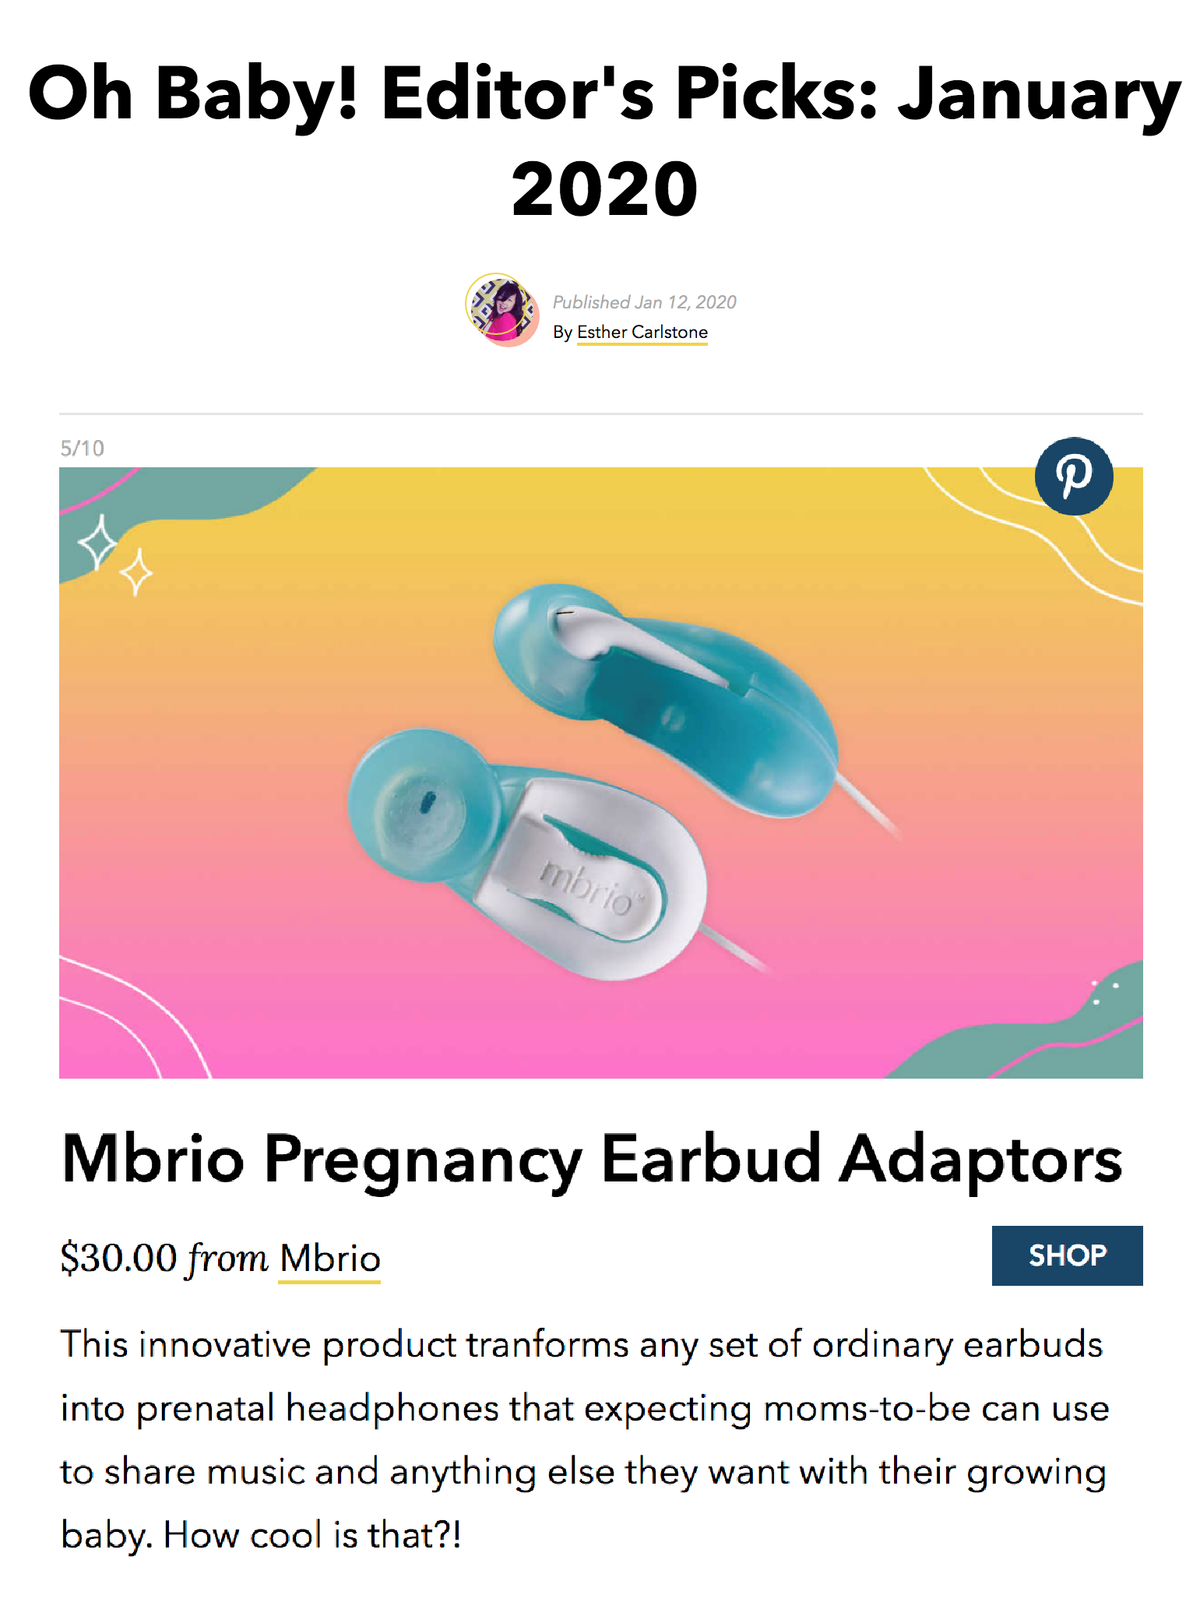 Mbrio Pregnancy Headphones, BUY NOW!